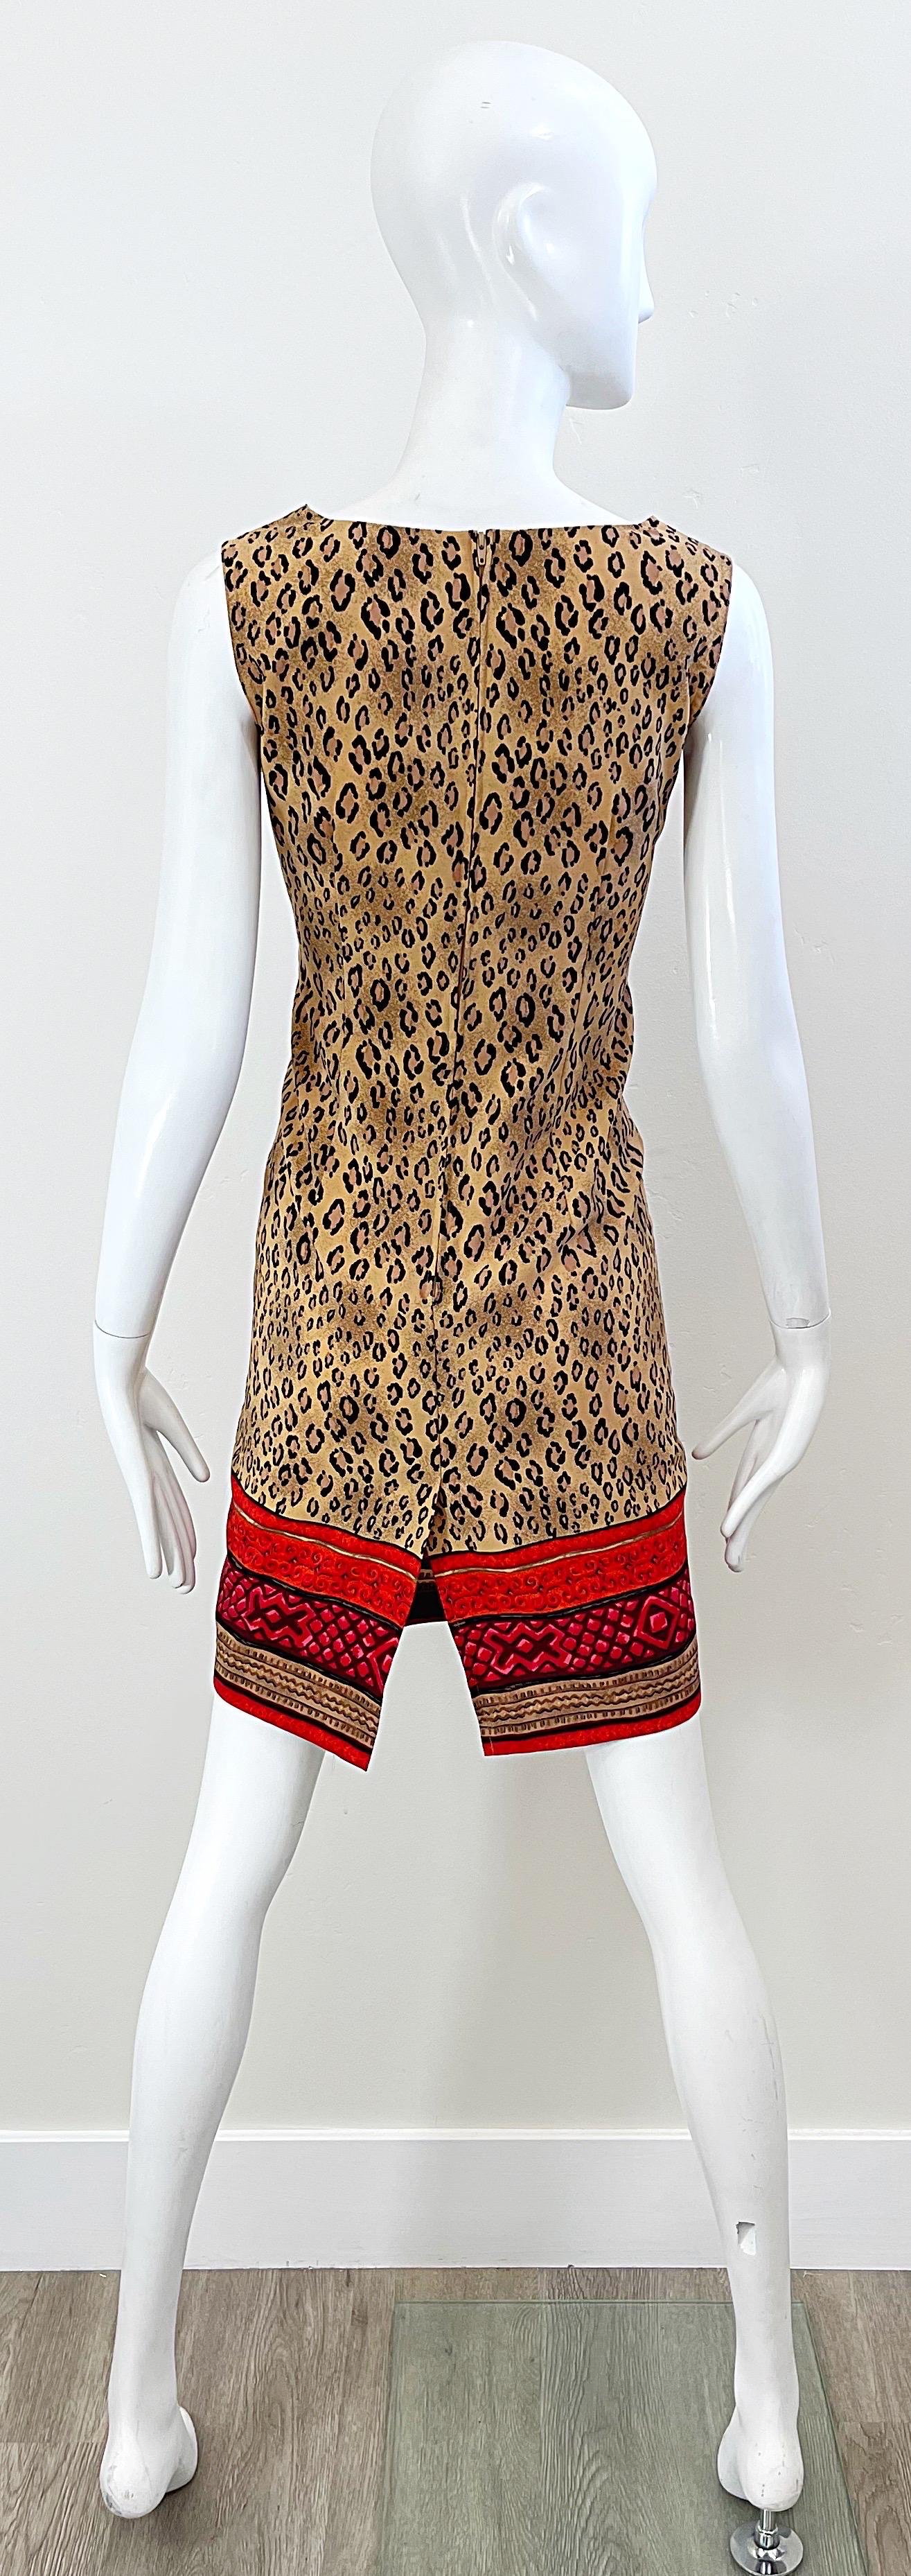 1990s Christian Lacroix Leopard Cheetah Animal Print Size 8 Vintage 90s Dress For Sale 3